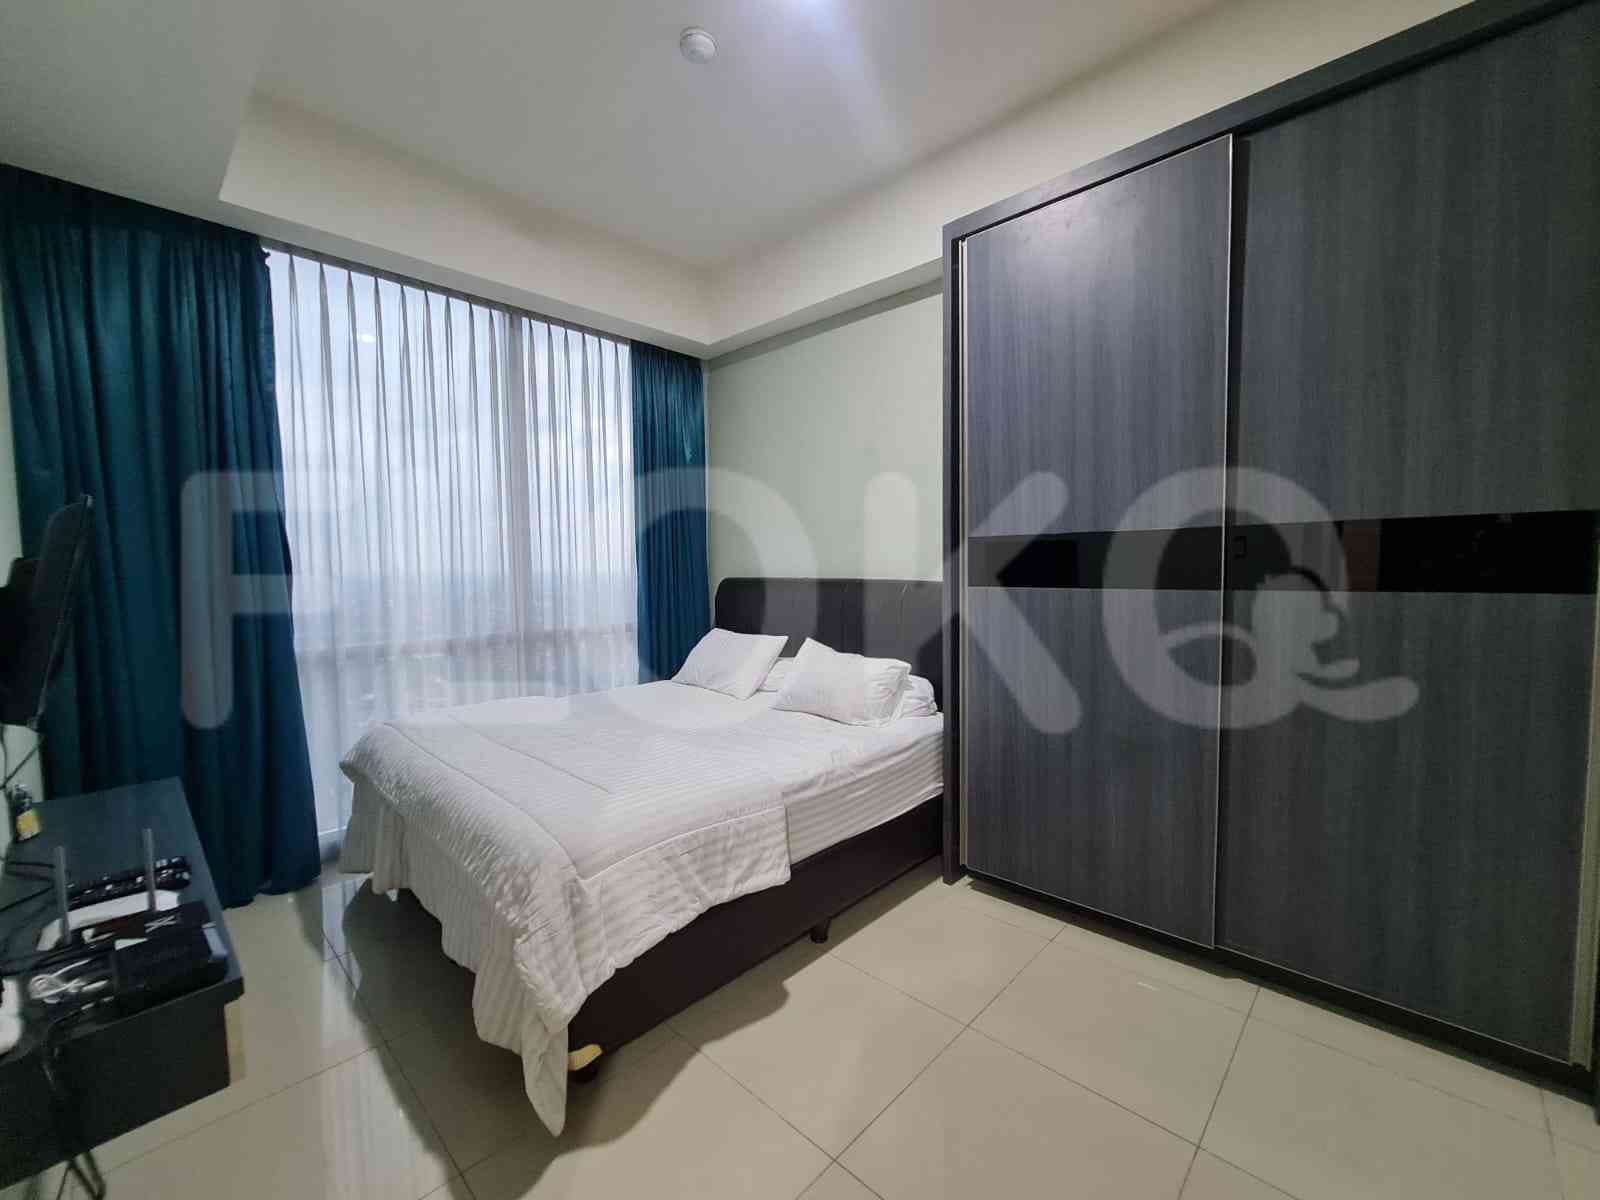 2 Bedroom on 3rd Floor for Rent in Kemang Village Residence - fke08b 3